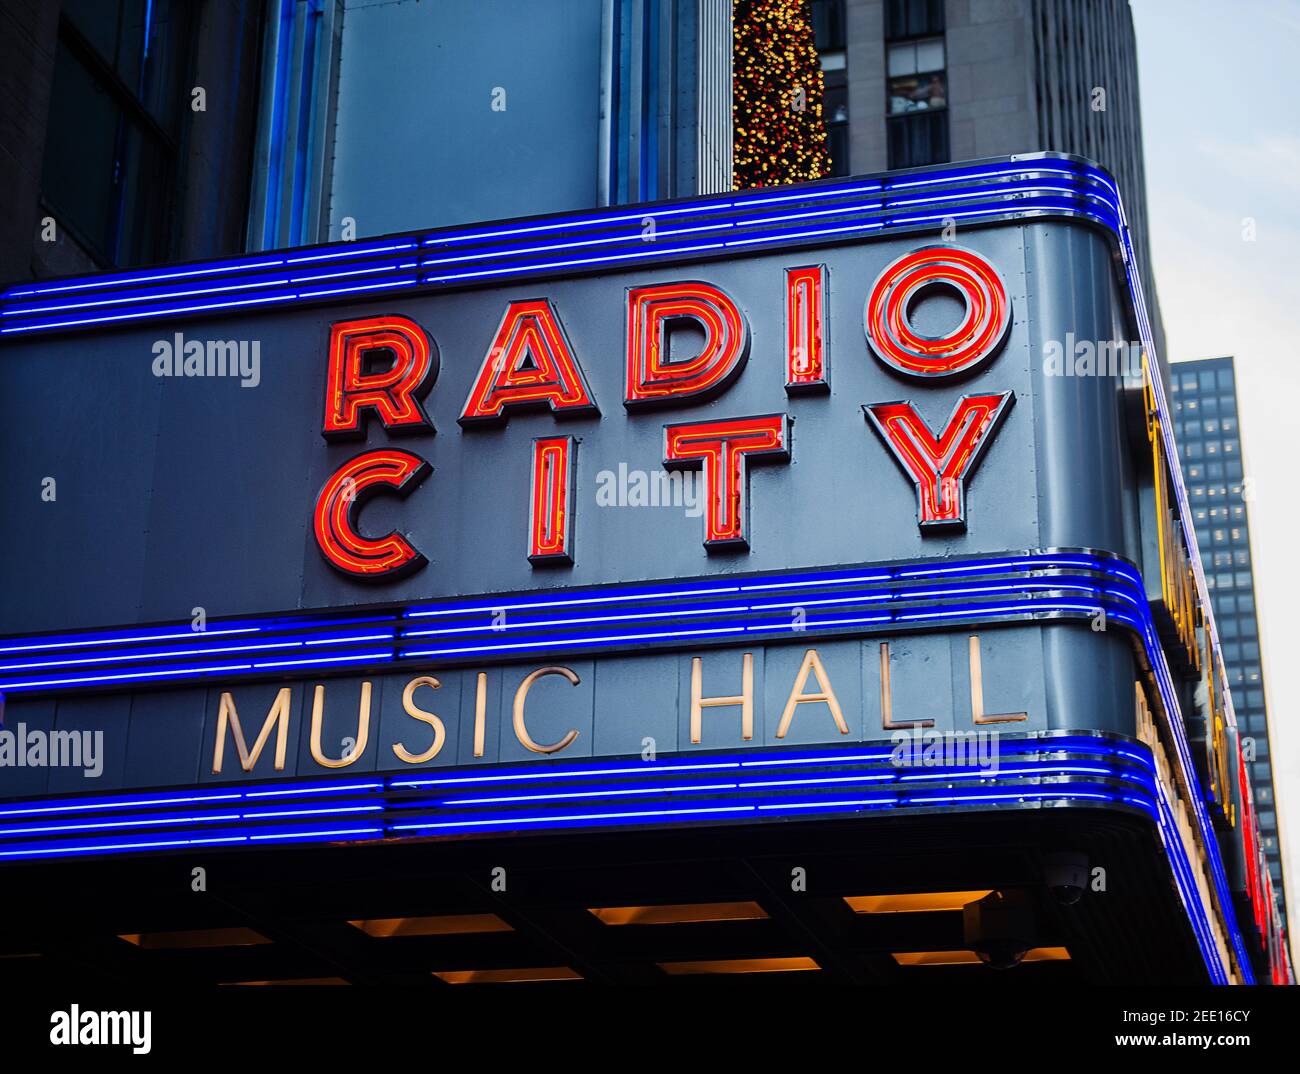 Radio City music Hall, Manhattan, New York City, New York Stock Photo